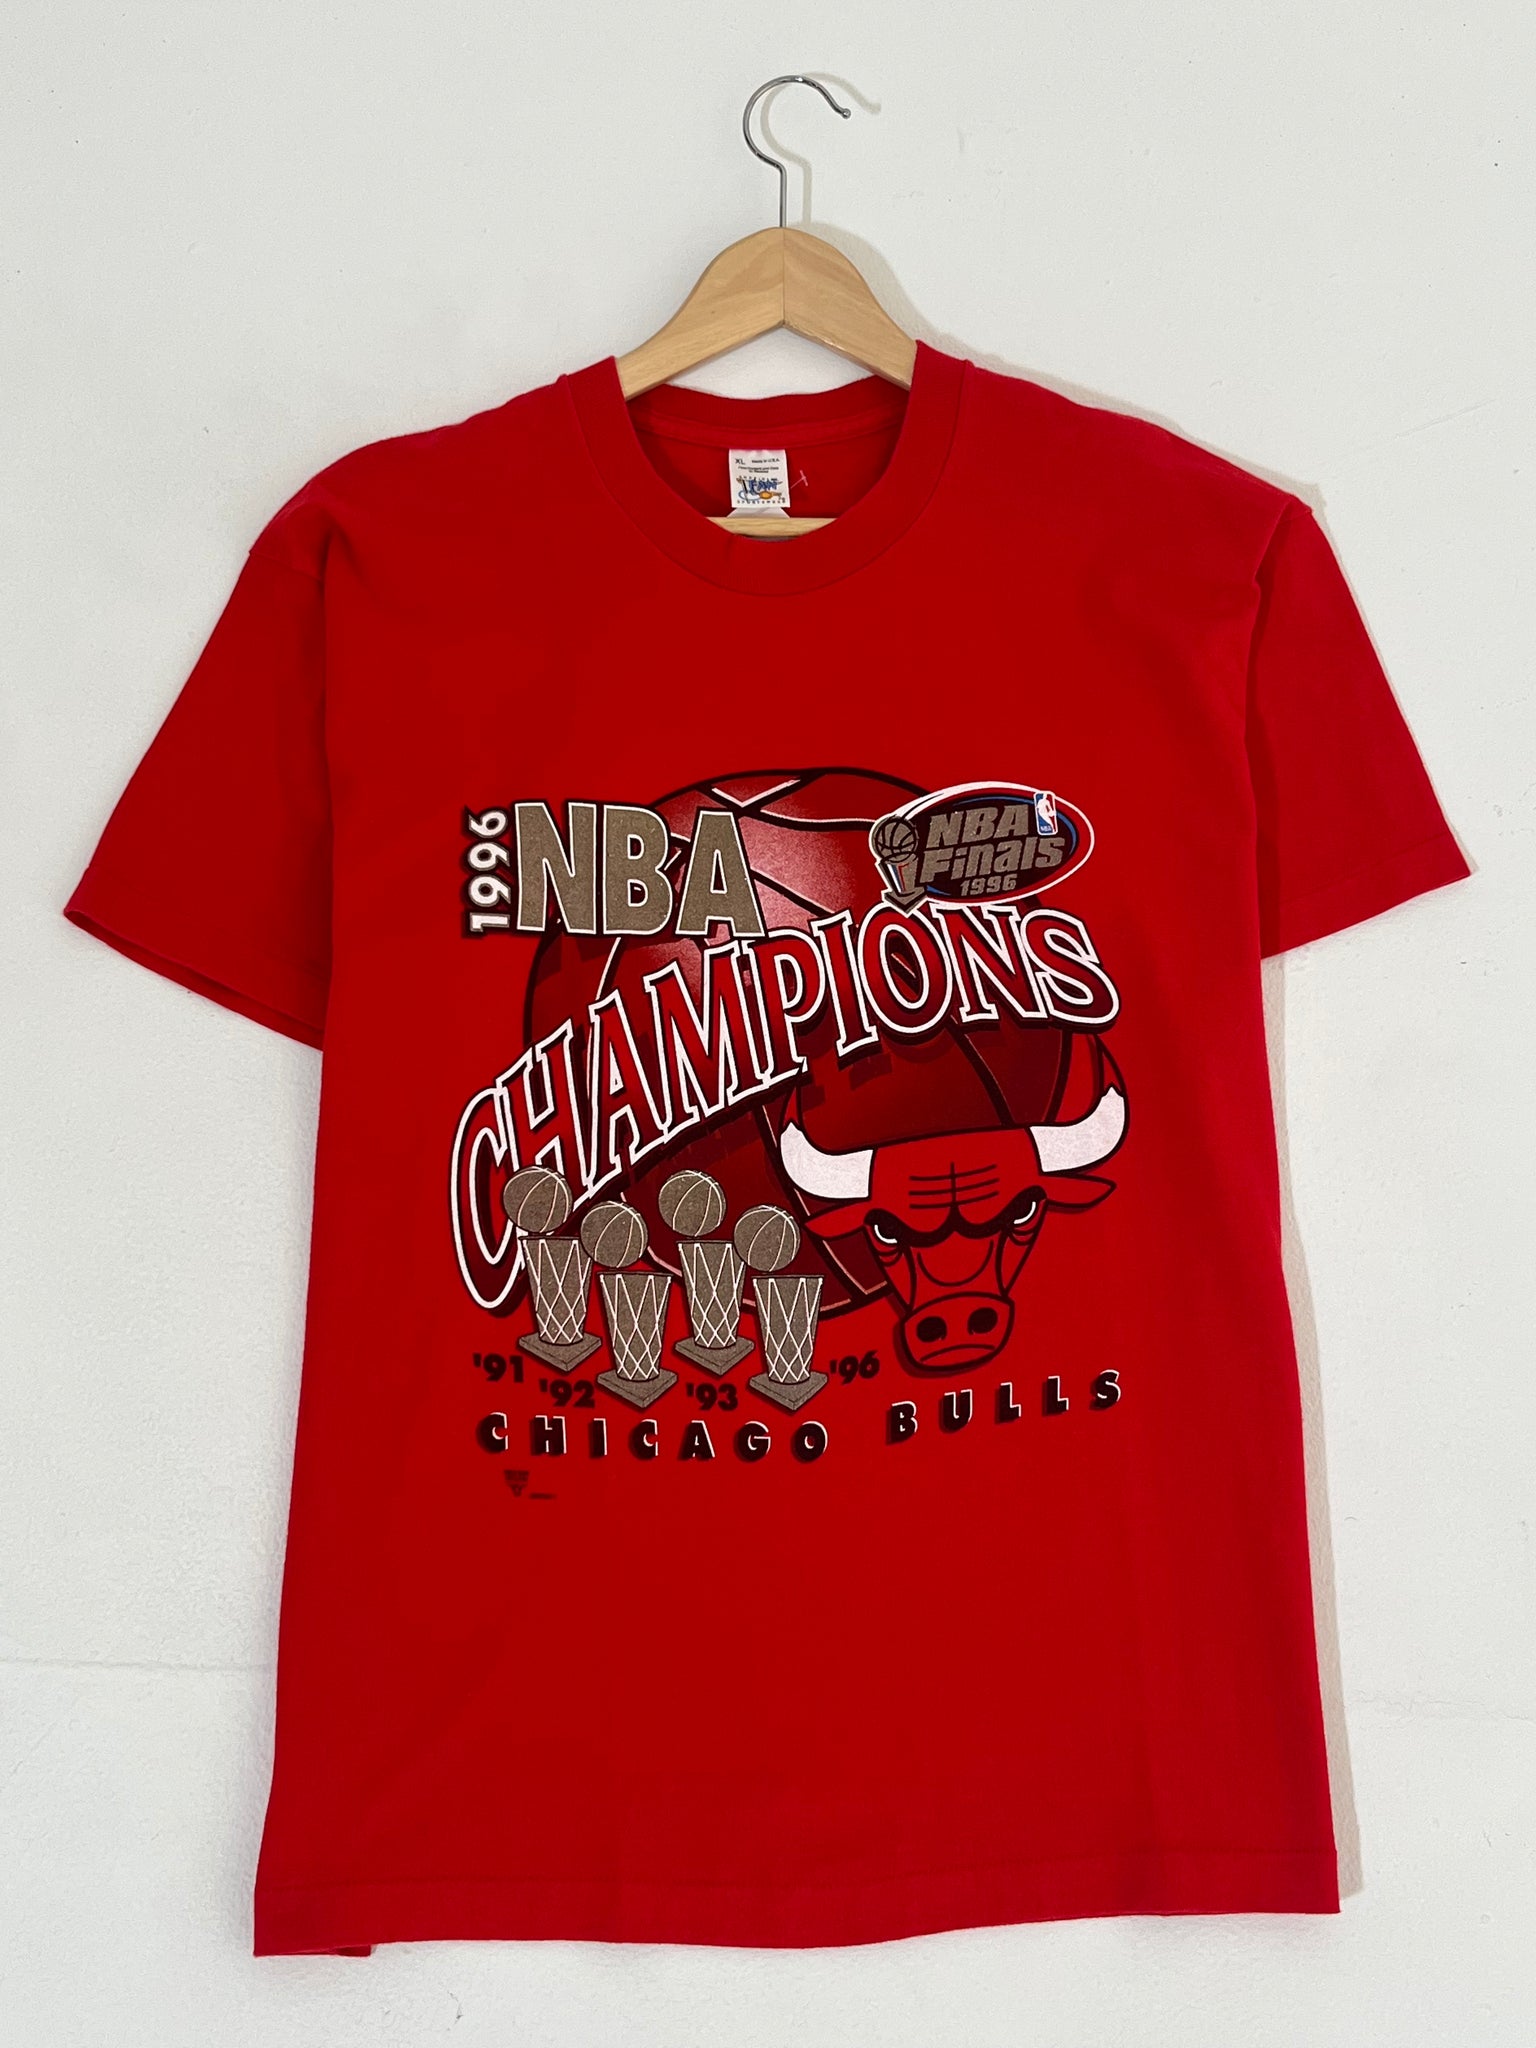 Chicago Bulls T shirt for Men Short Sleeves NBA Print